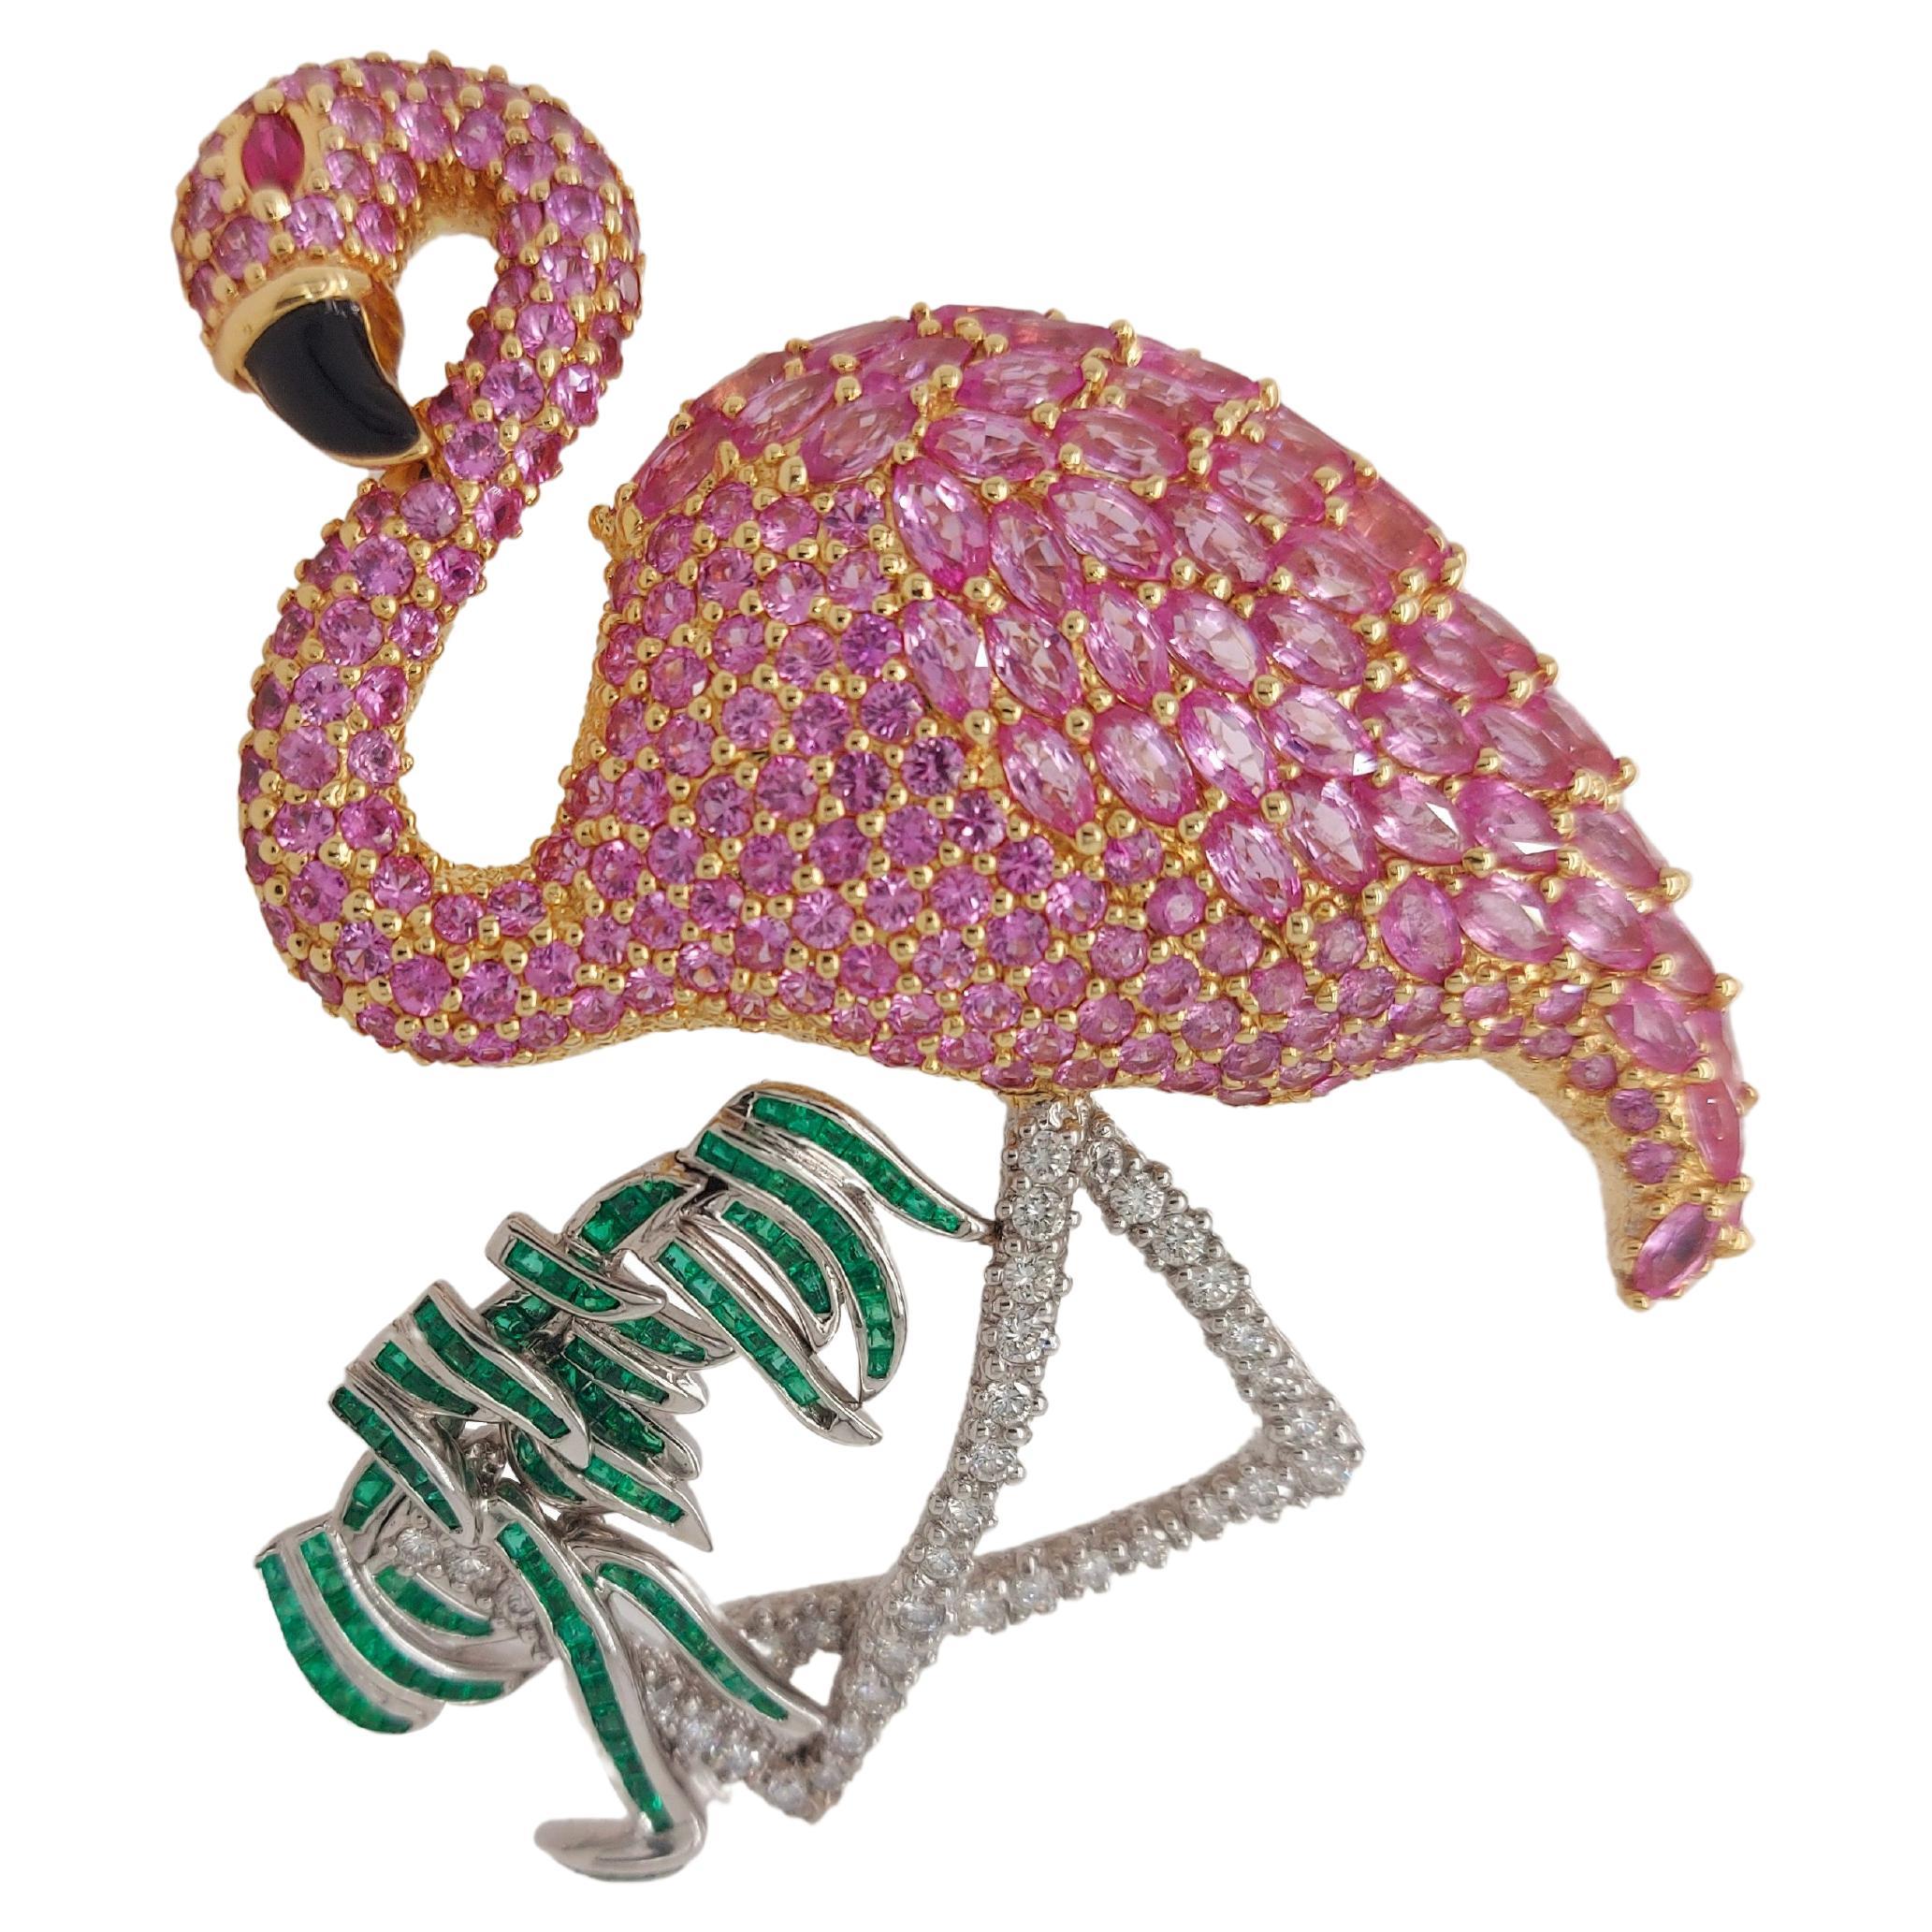 Flamingo-Brosche/Anhänger aus Platin und 18 Karat Gelbgold mit Diamanten, Smaragden, Rubinen